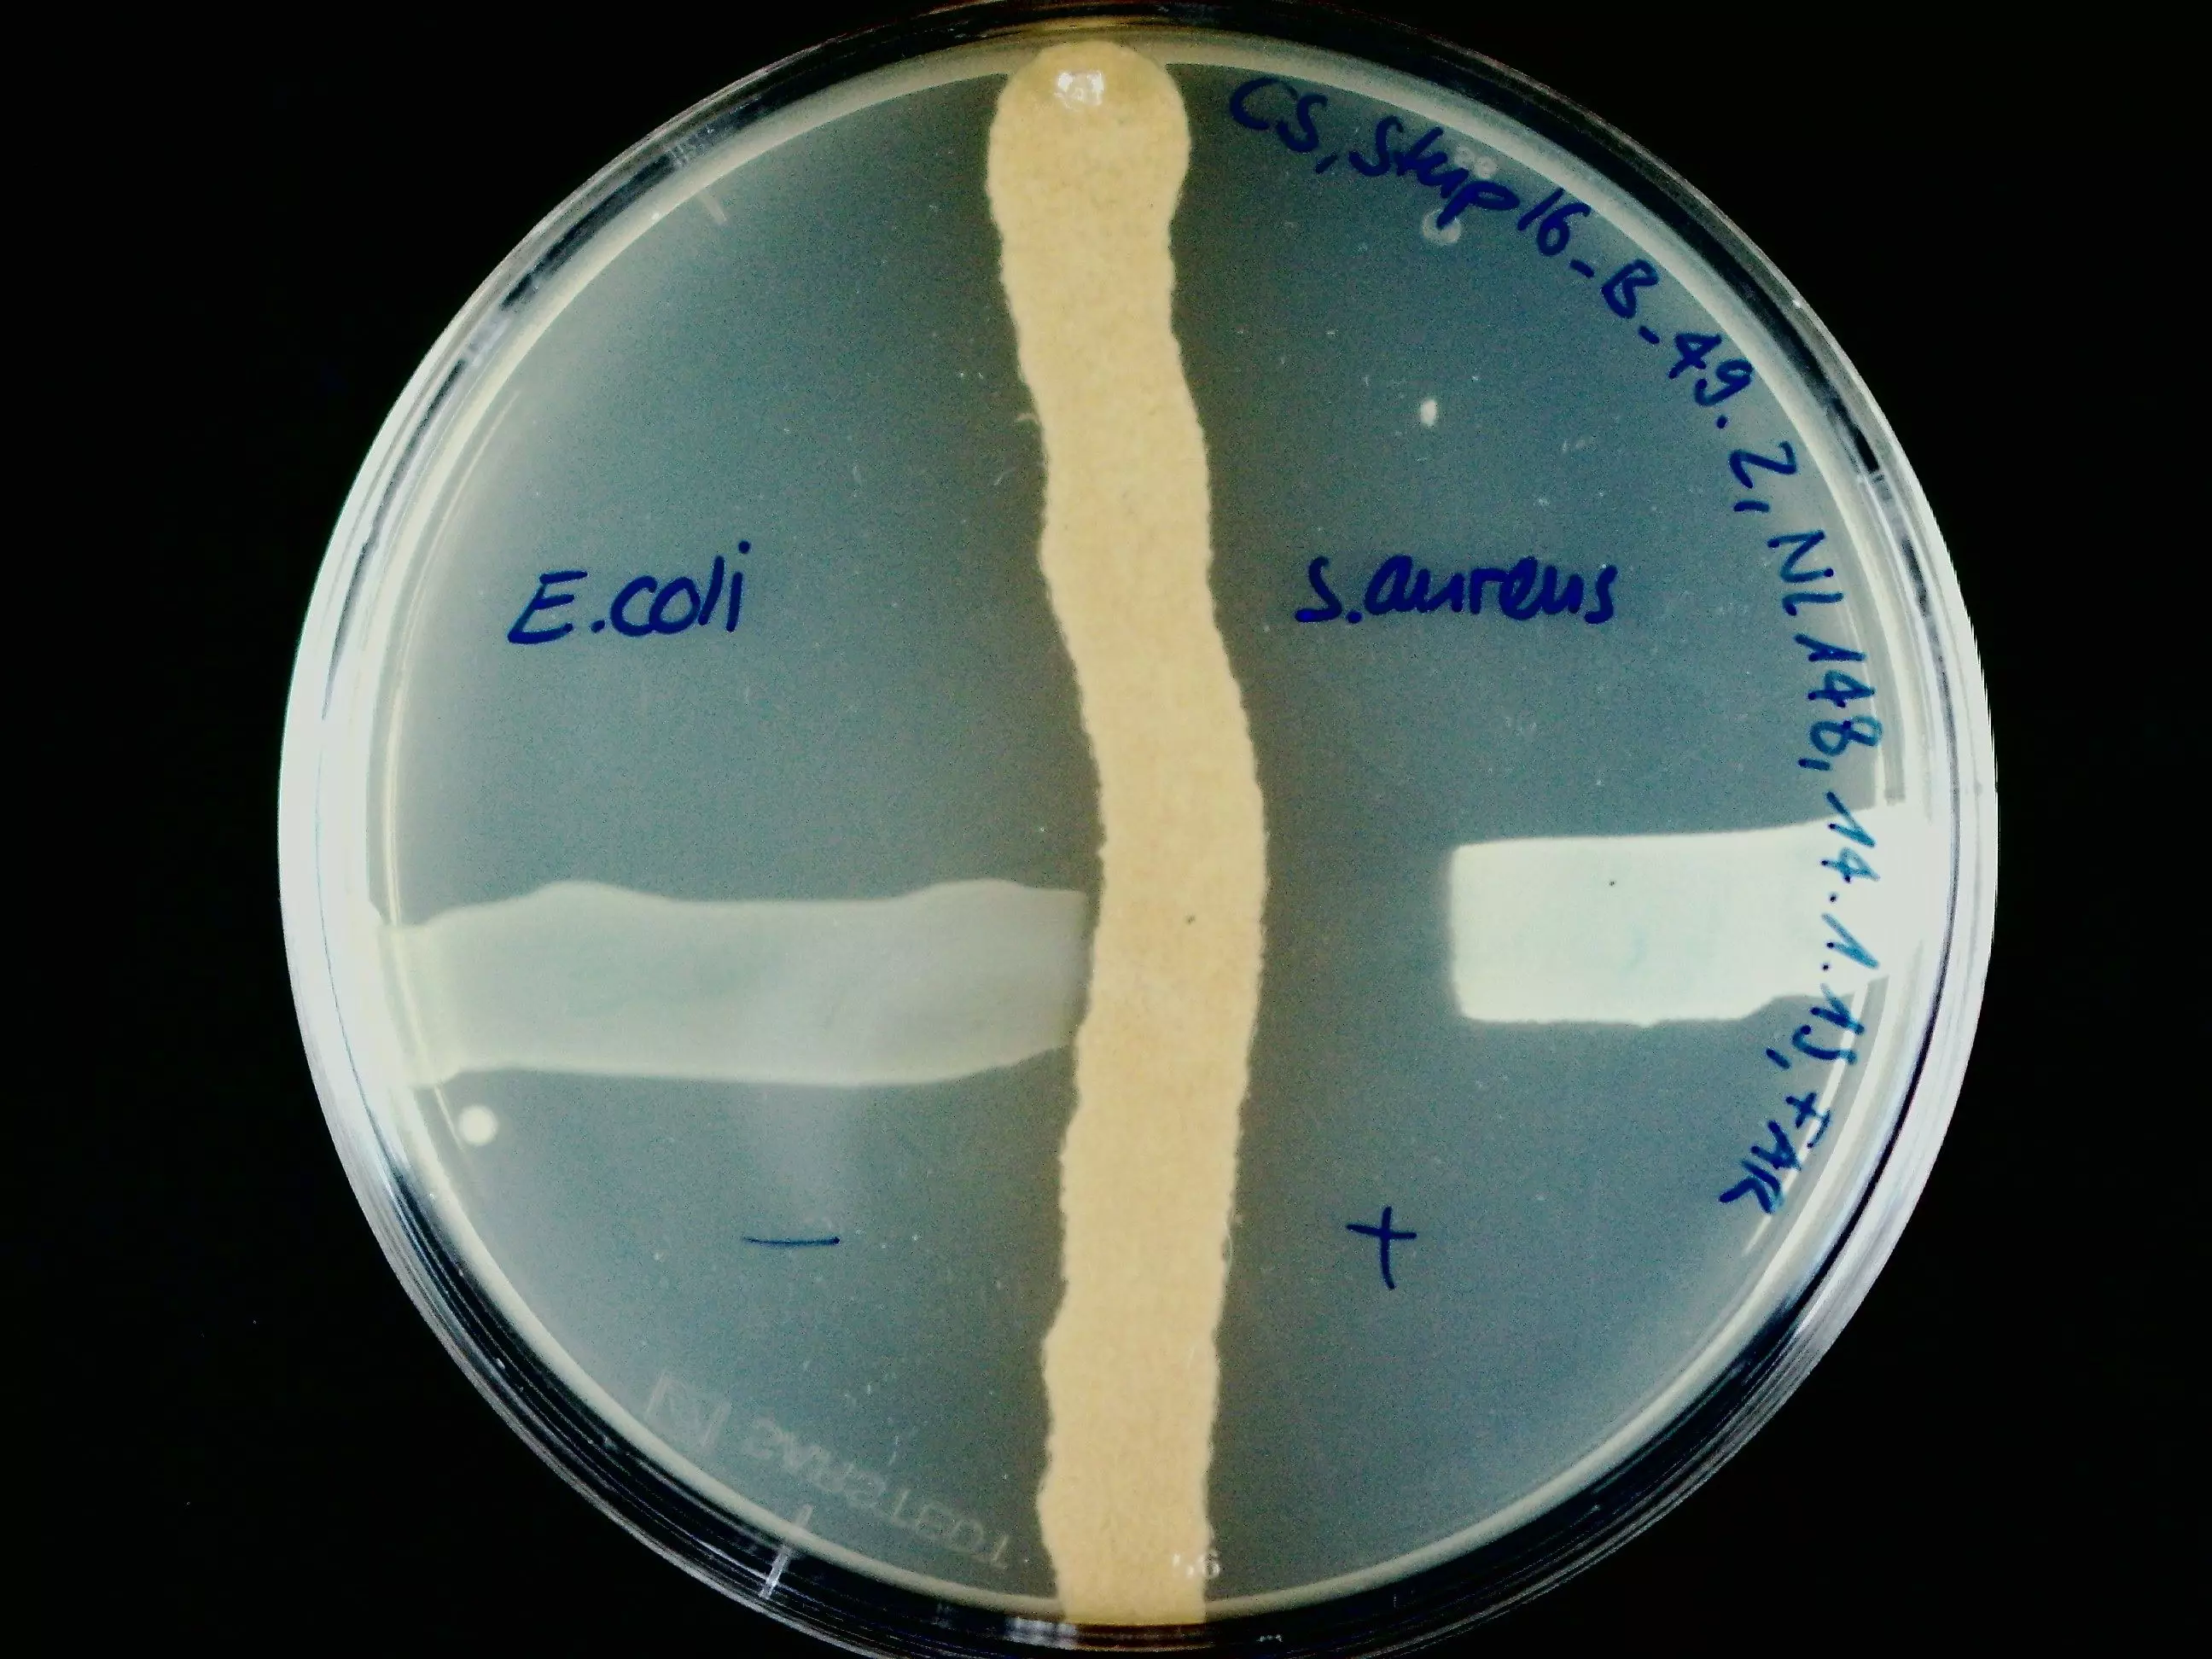 Nähragarplatte mit 3 Ausstrichen: Vertikal eine Streptomyces-Art, welche einen antimikrobiellen Wirkstoff ausscheidet und horizontal 2 Testkeime. S. aureus wird im Wachstum gehemmt und E. coli nicht(links) und S. aureus (rechts)